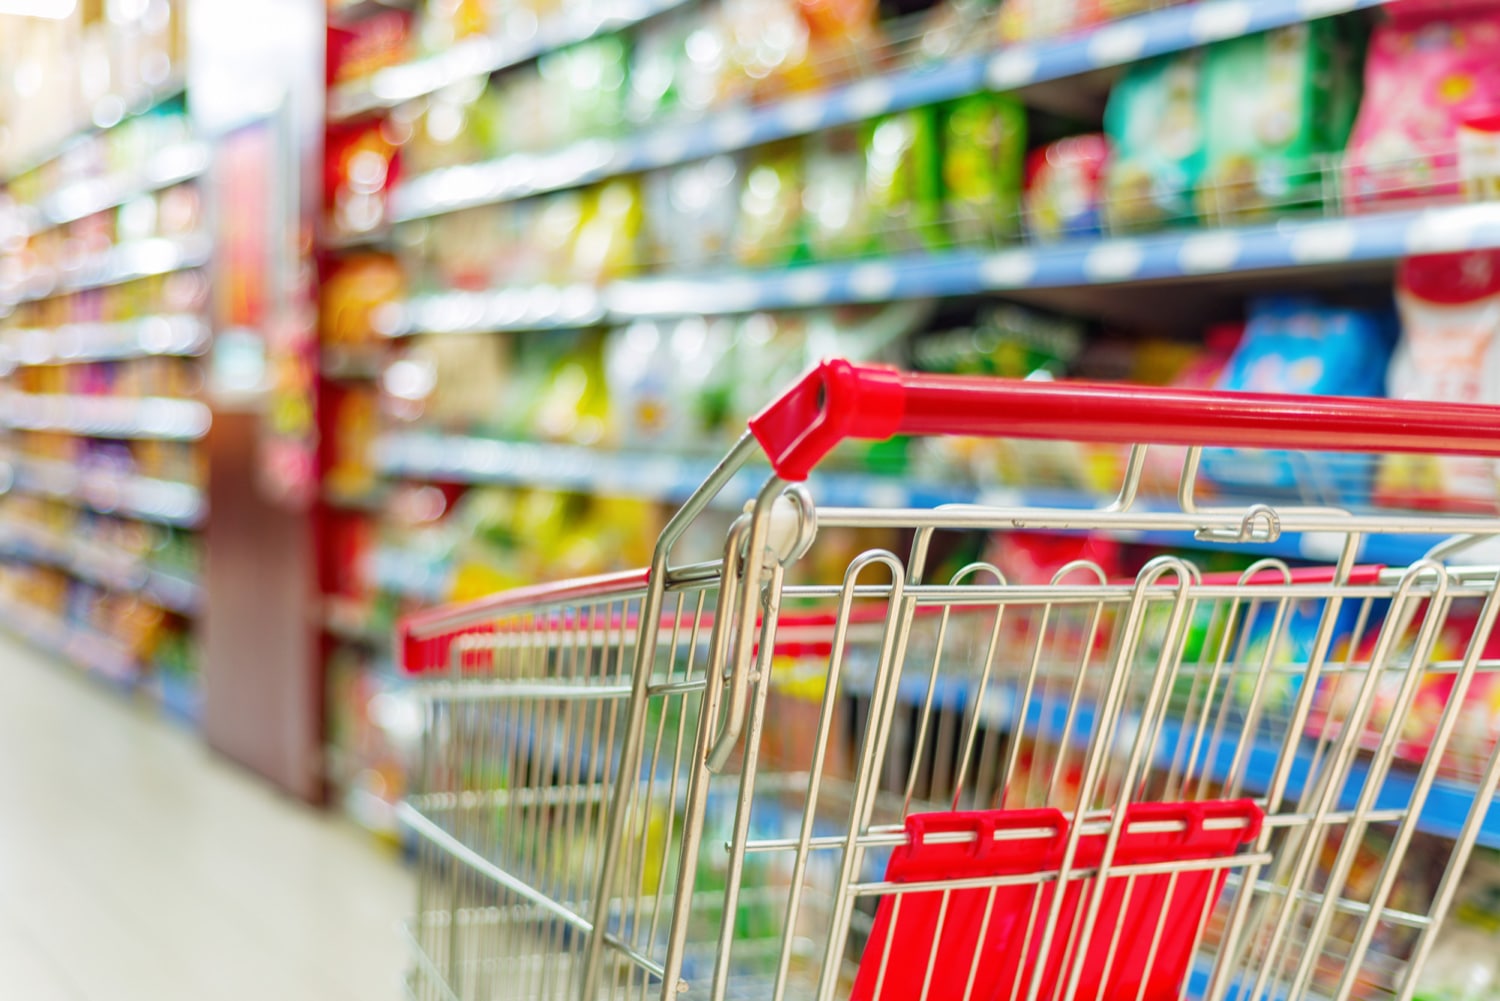 Marcas propias de supermercados ganan terreno entre consumidores de Costa Rica; una de ellos concentra 60% del volumen de compra